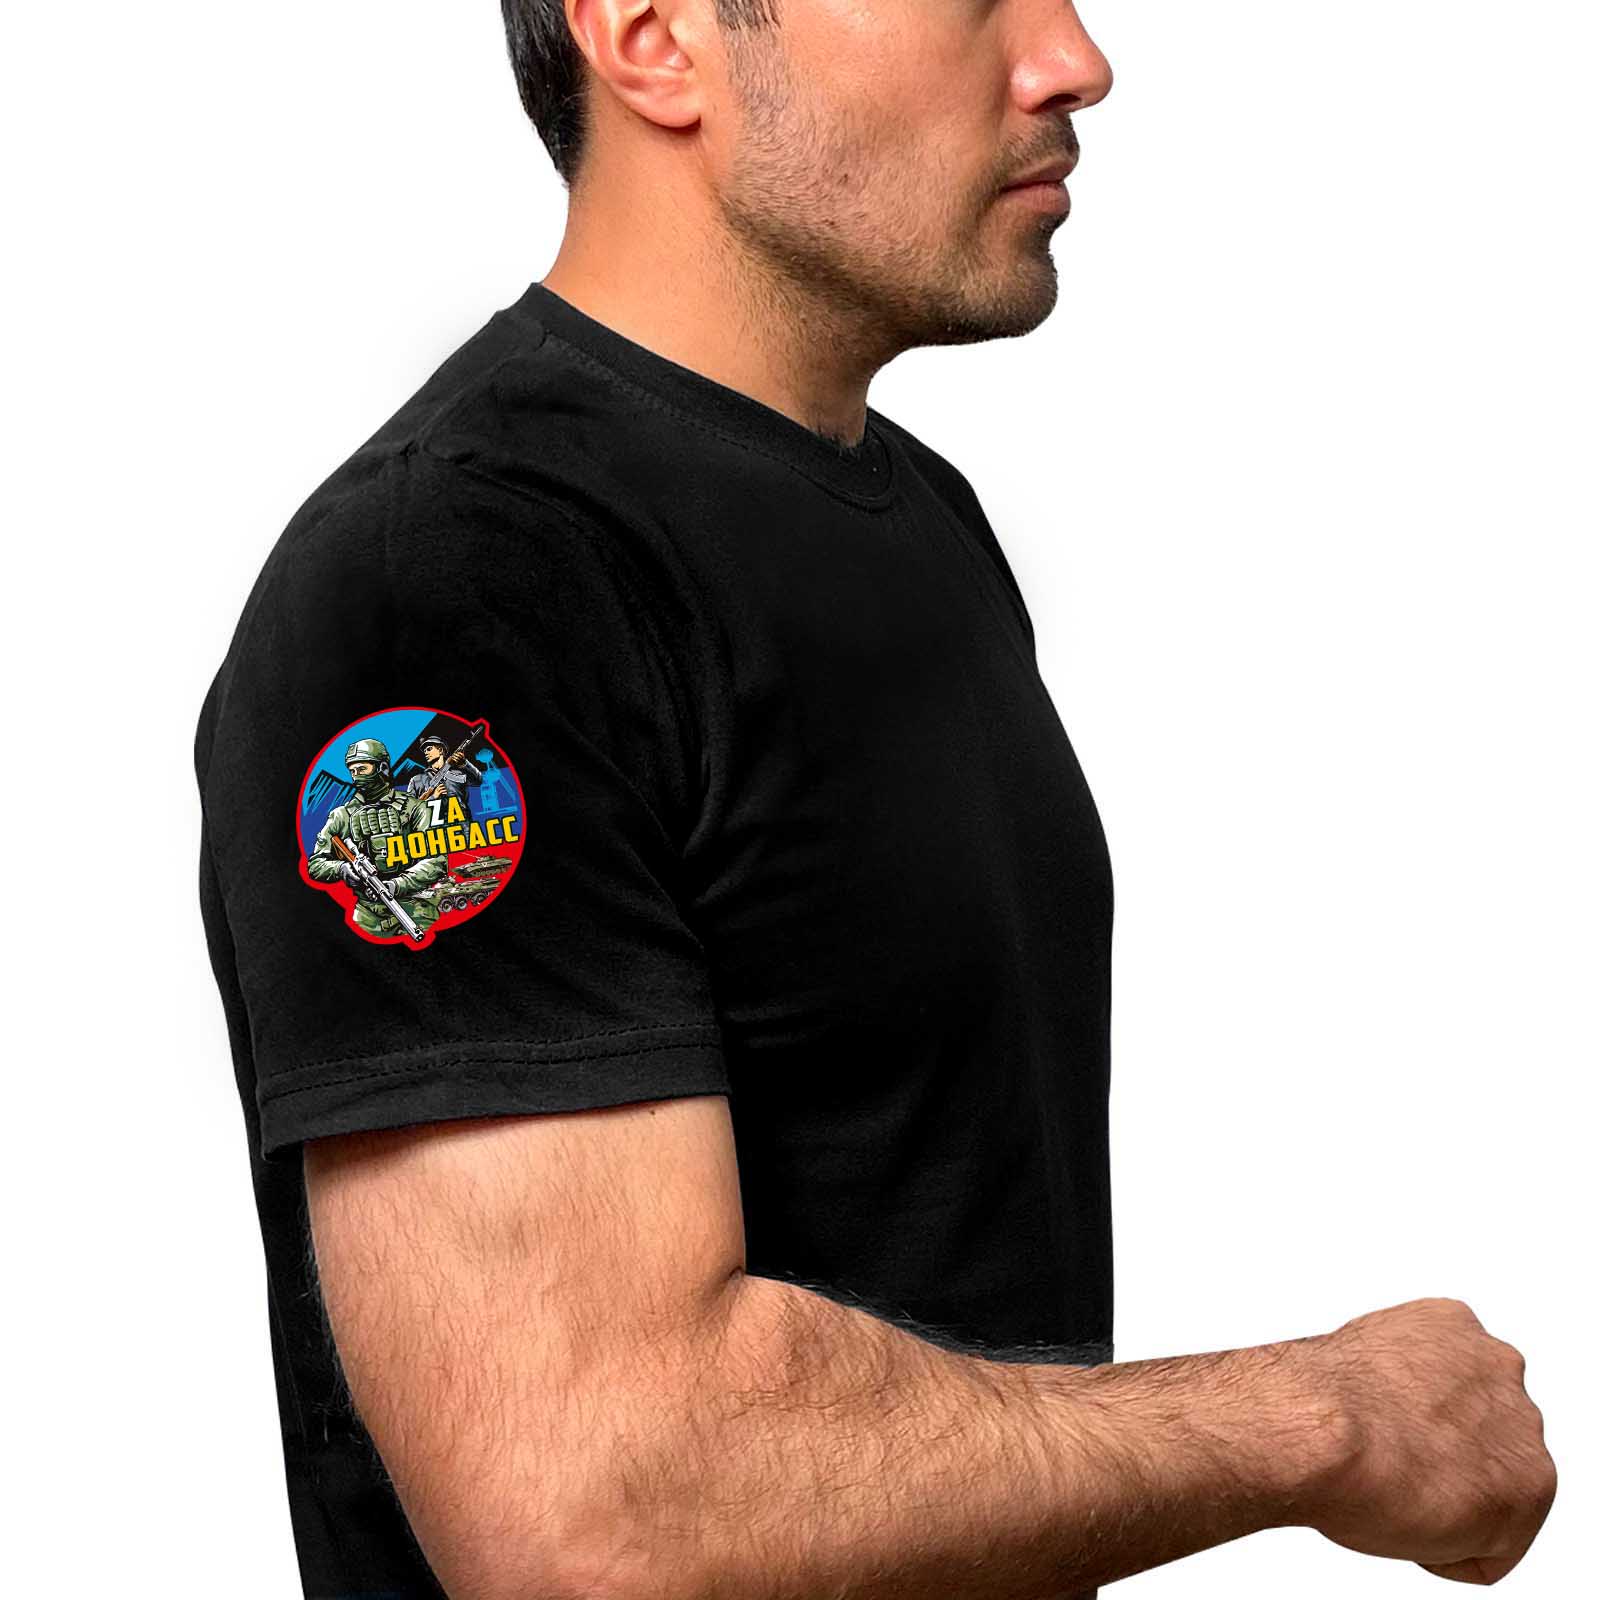 Чёрная футболка с термотрансфером "Zа Донбасс" на рукаве